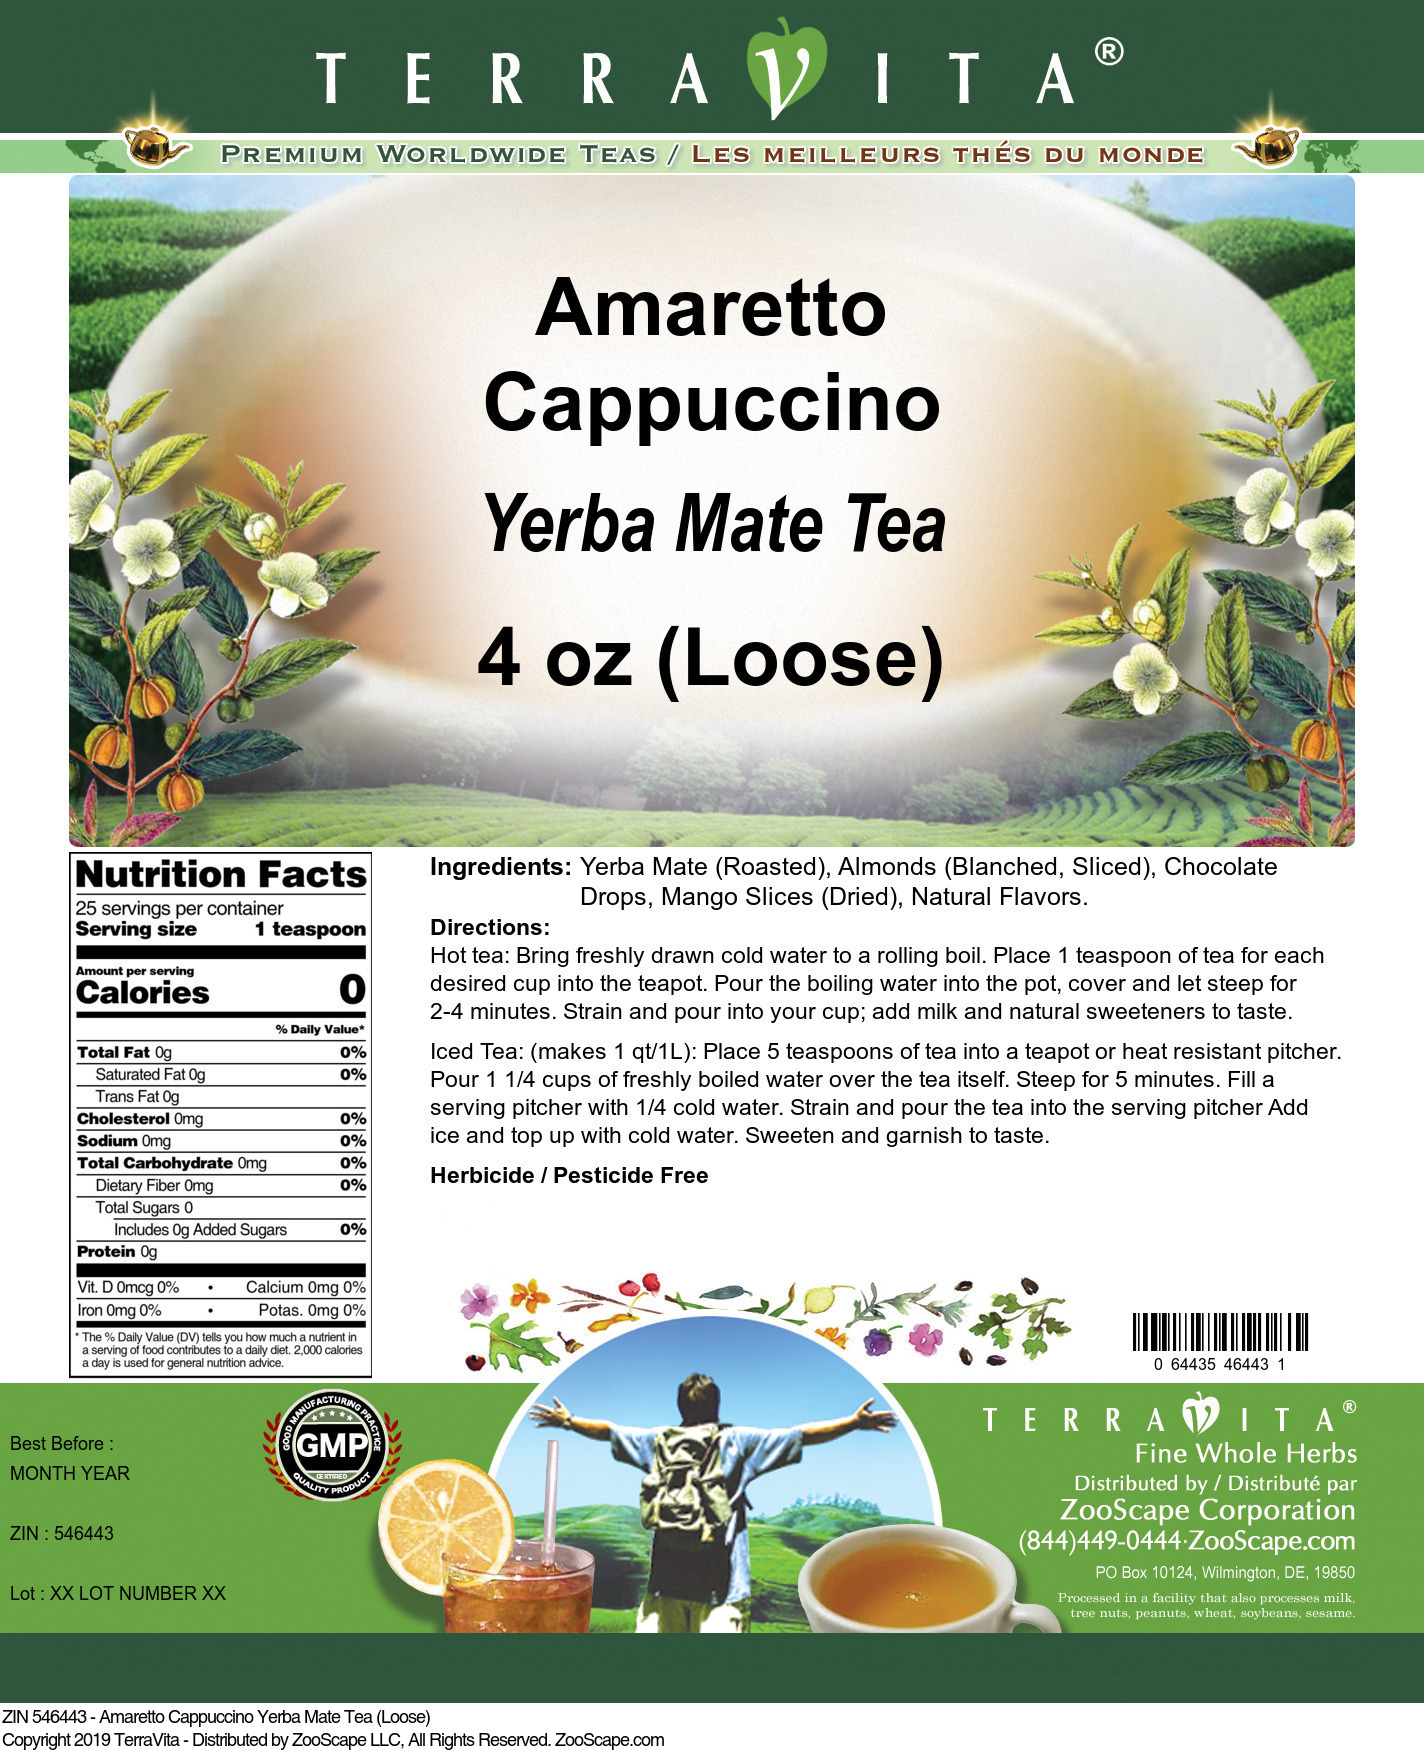 Amaretto Cappuccino Yerba Mate Tea (Loose) - Label